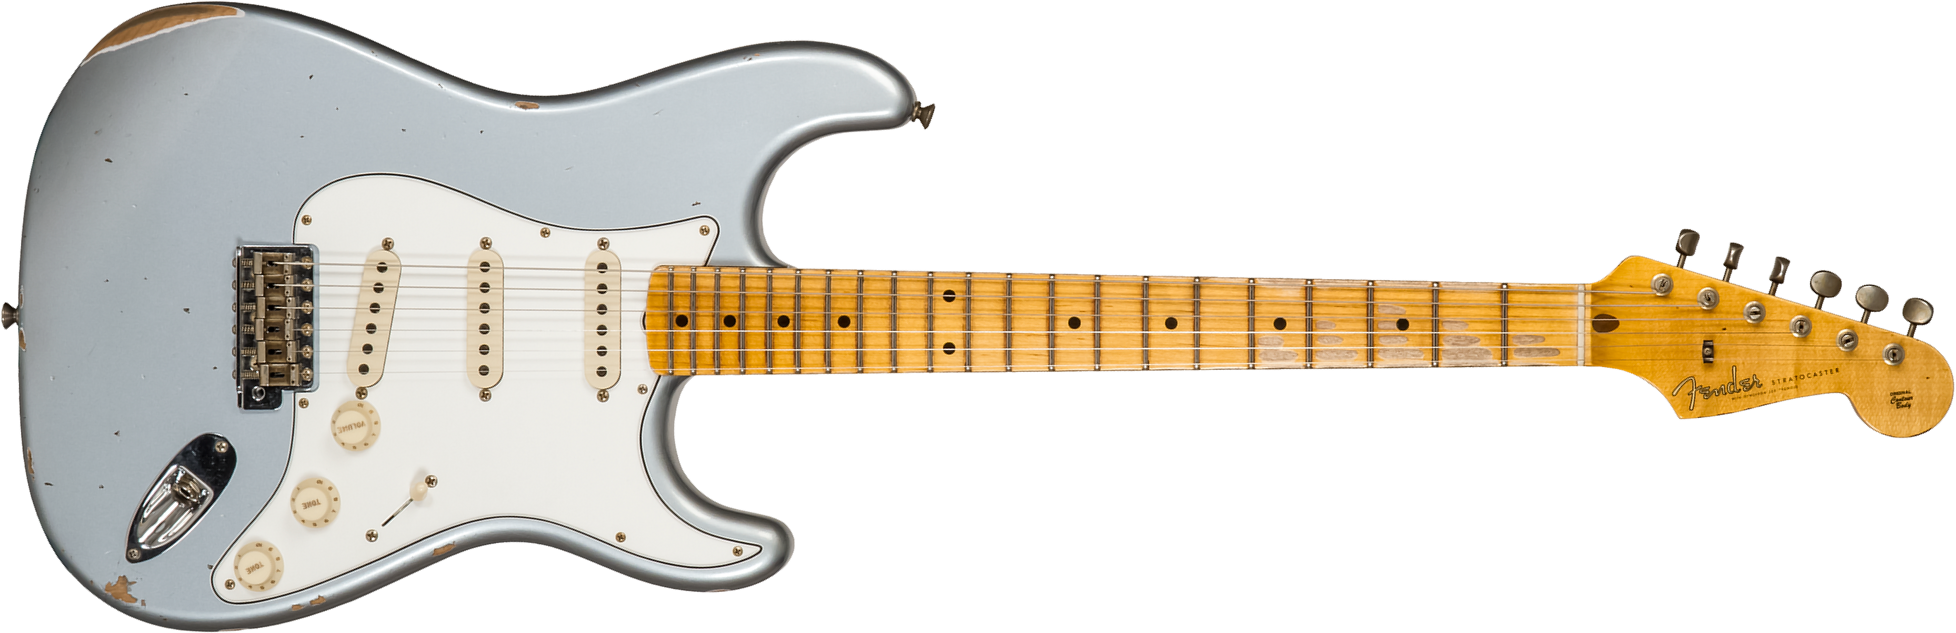 Fender Custom Shop Strat Tomatillo Special 3s Trem Mn #cz571096 - Relic Aged Ice Blue Metallic - Elektrische gitaar in Str-vorm - Main picture